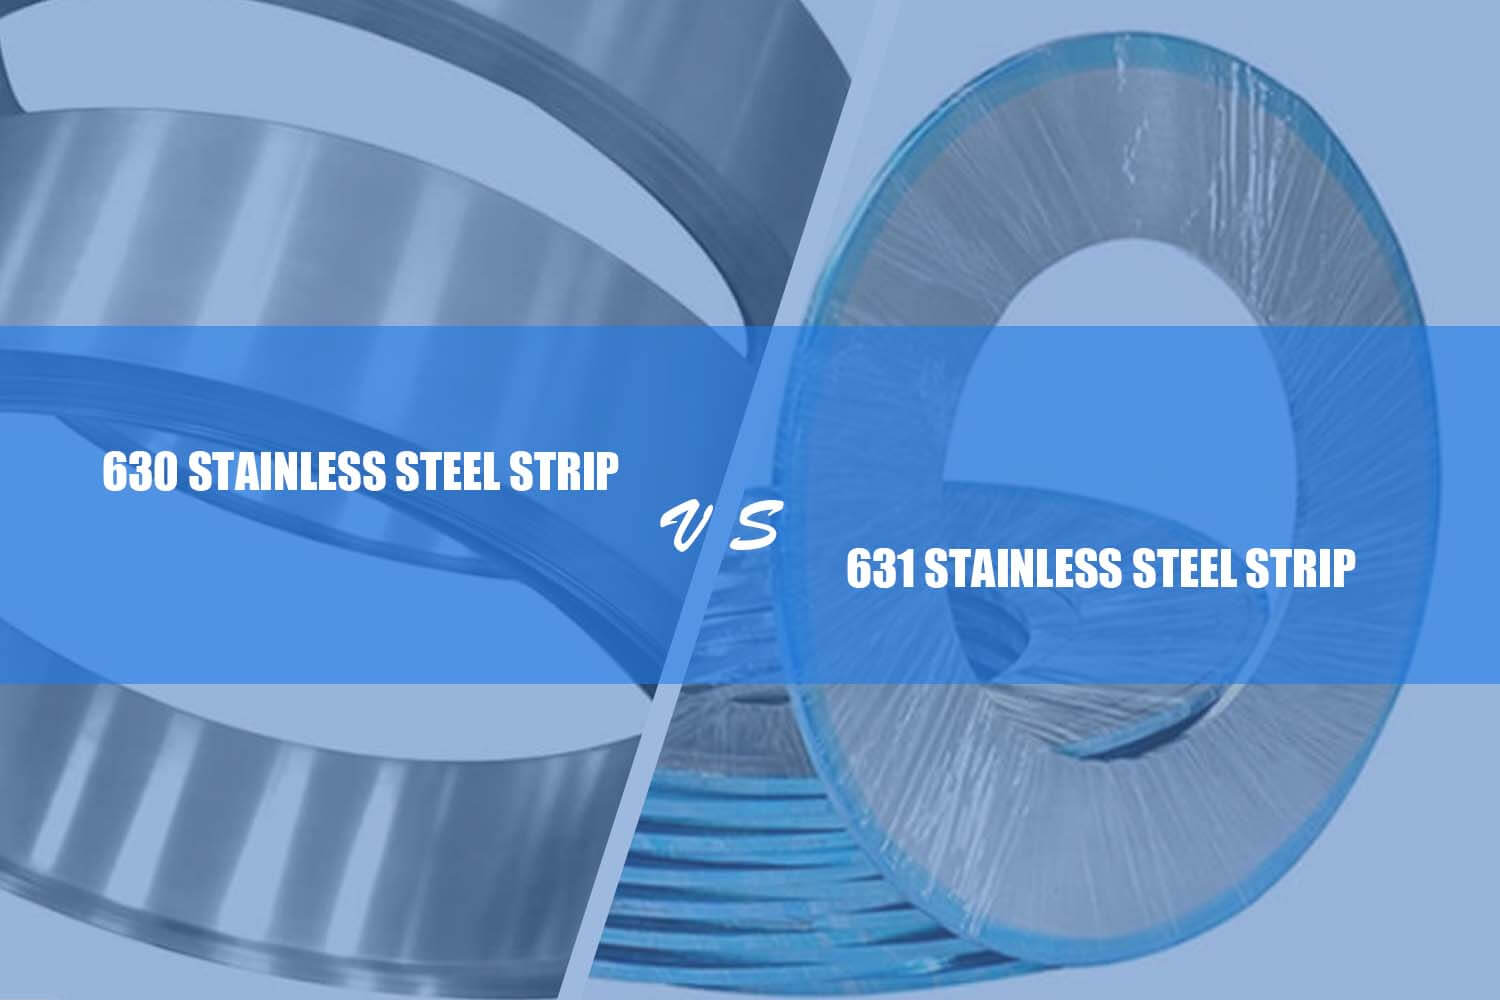 difference between 630 полоса из нержавеющей стали и 631 полоса из нержавеющей стали